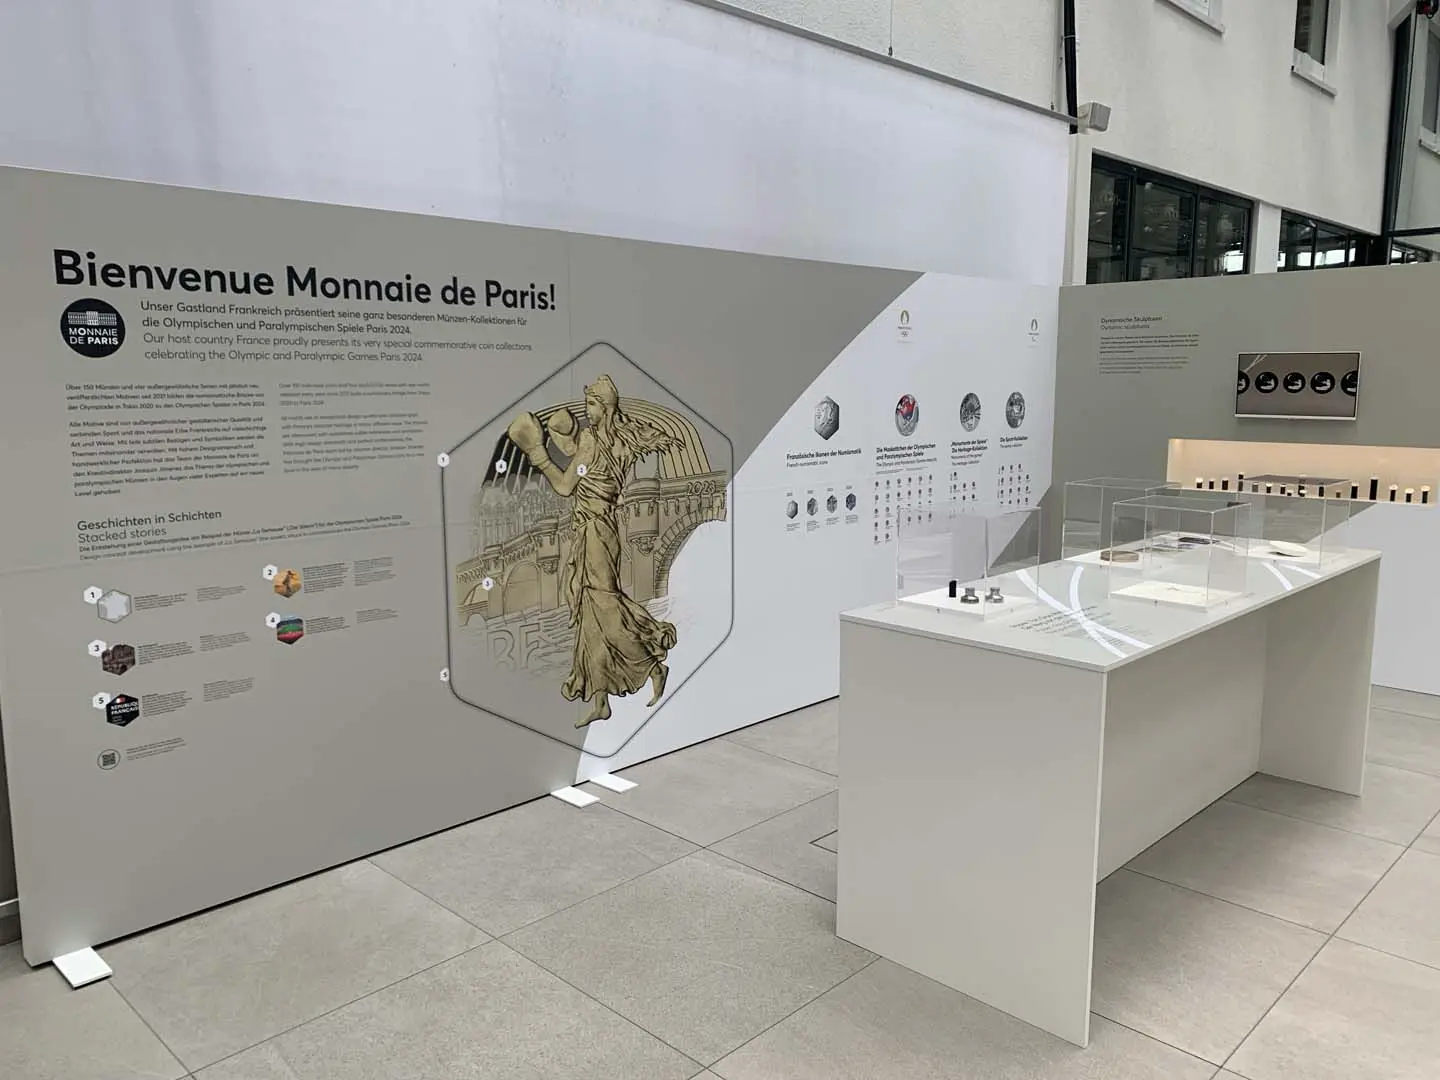 Ehrengast: Die Monnaie de Paris präsentiert sich im Eingangsbereich.